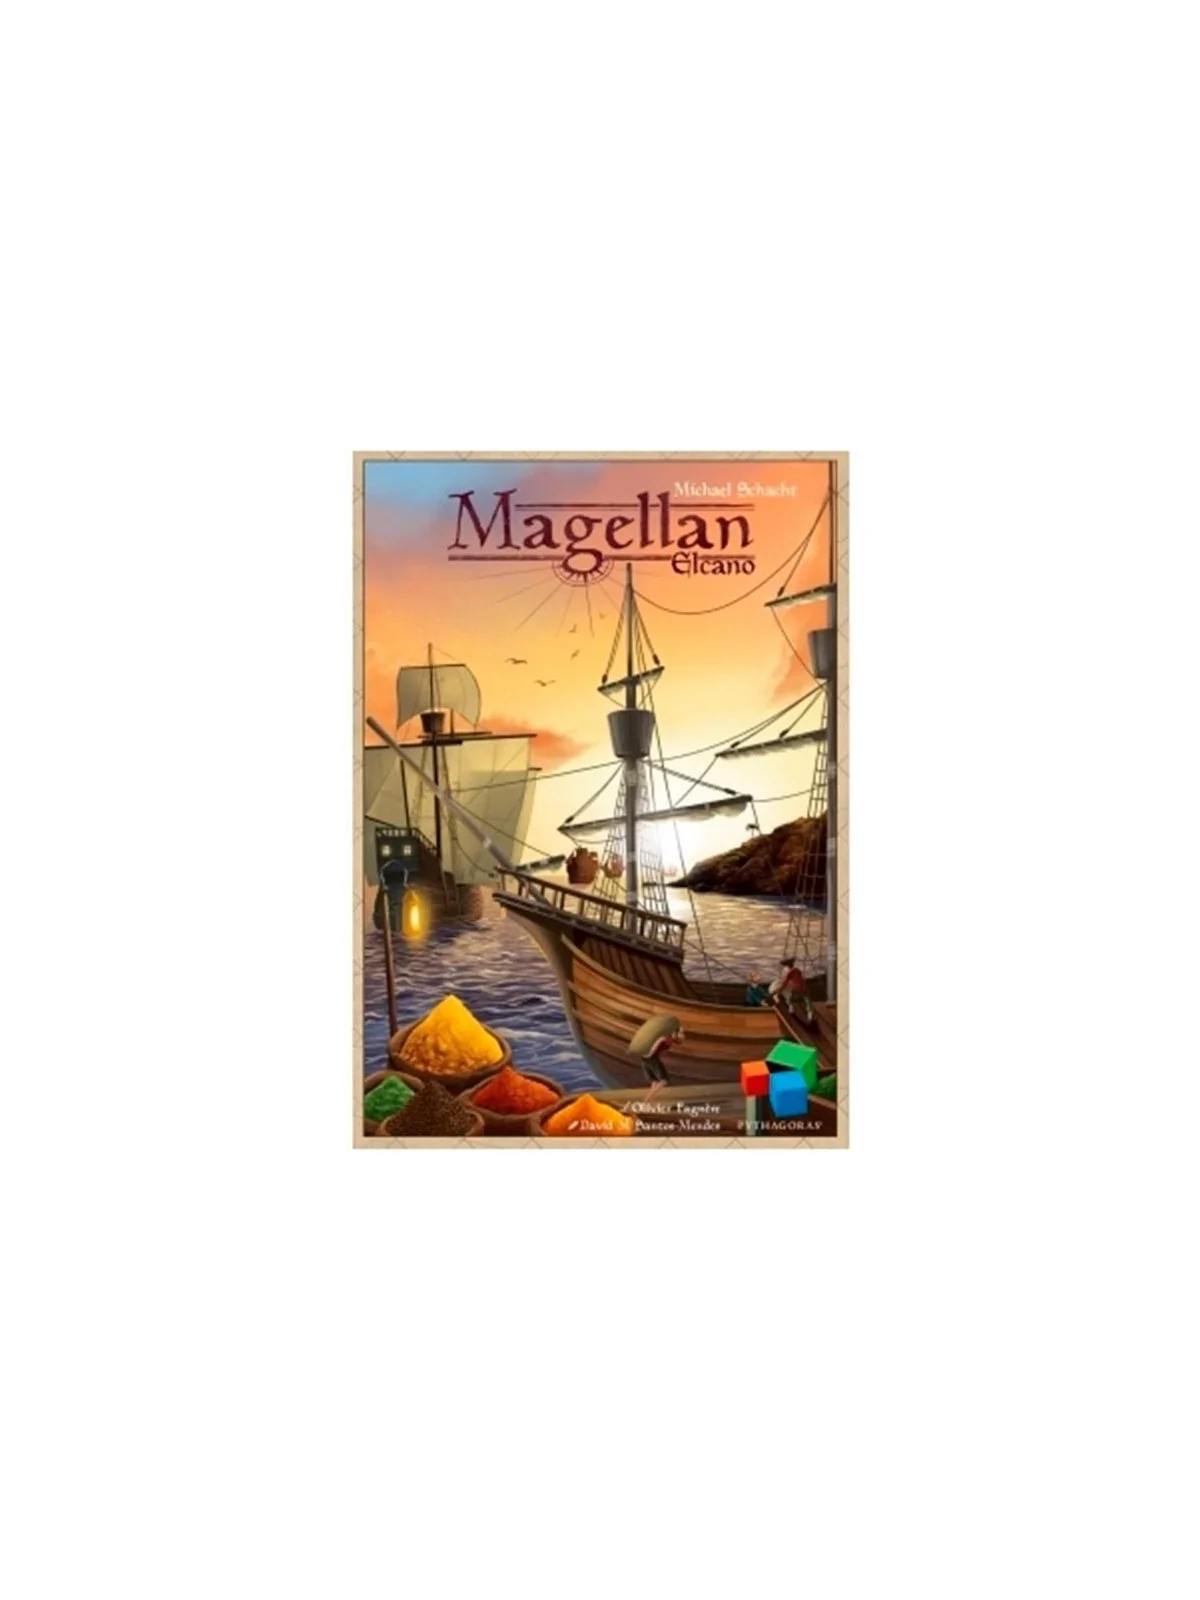 Comprar Magellan: ElCano barato al mejor precio 12,56 € de Pythagoras